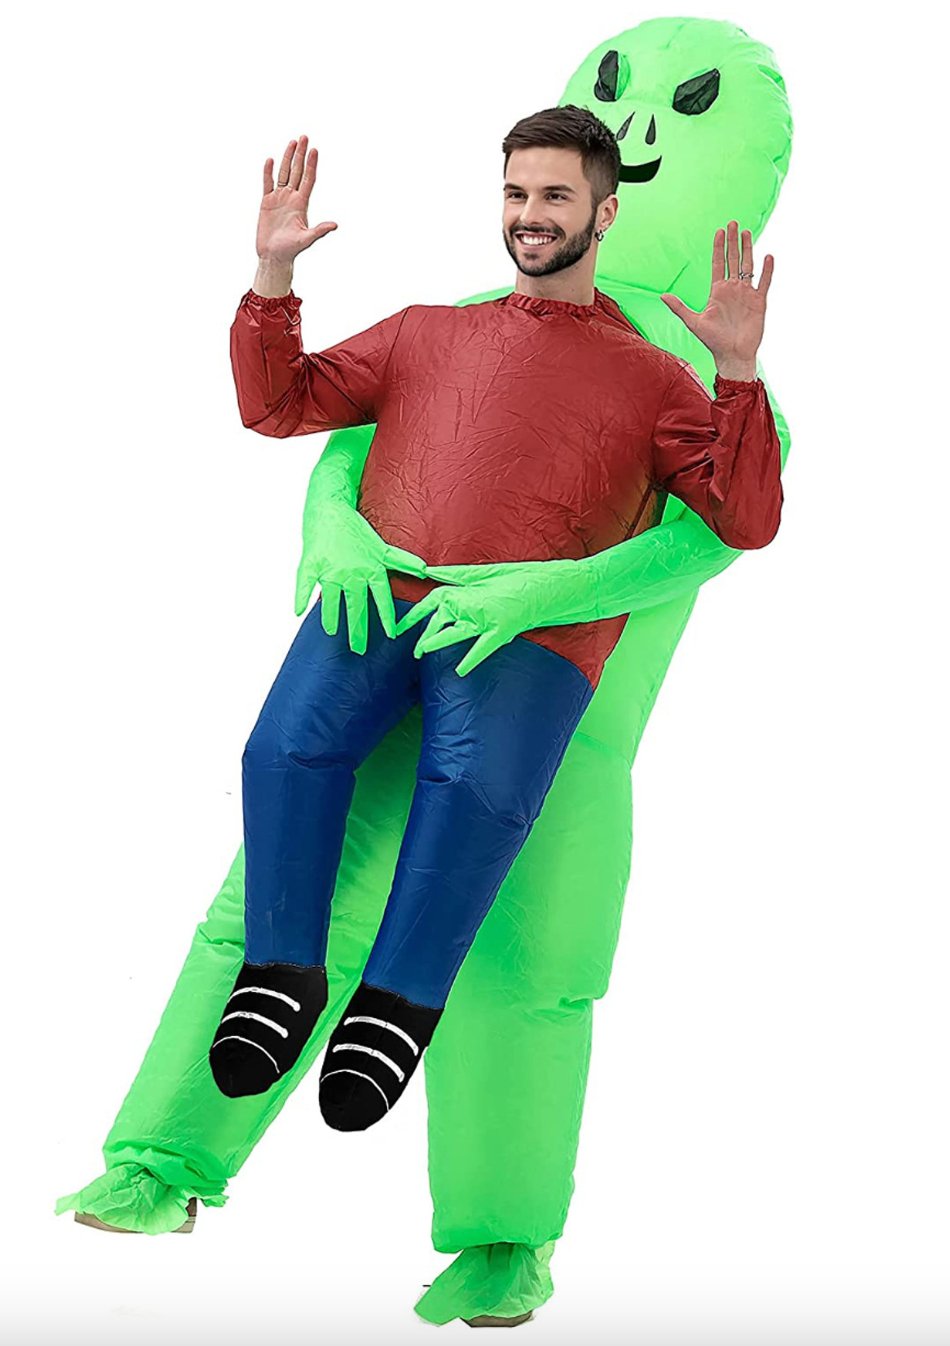 Costume Adulte Gonflable - Enlèvement Par Un Extraterrestre Party Shop